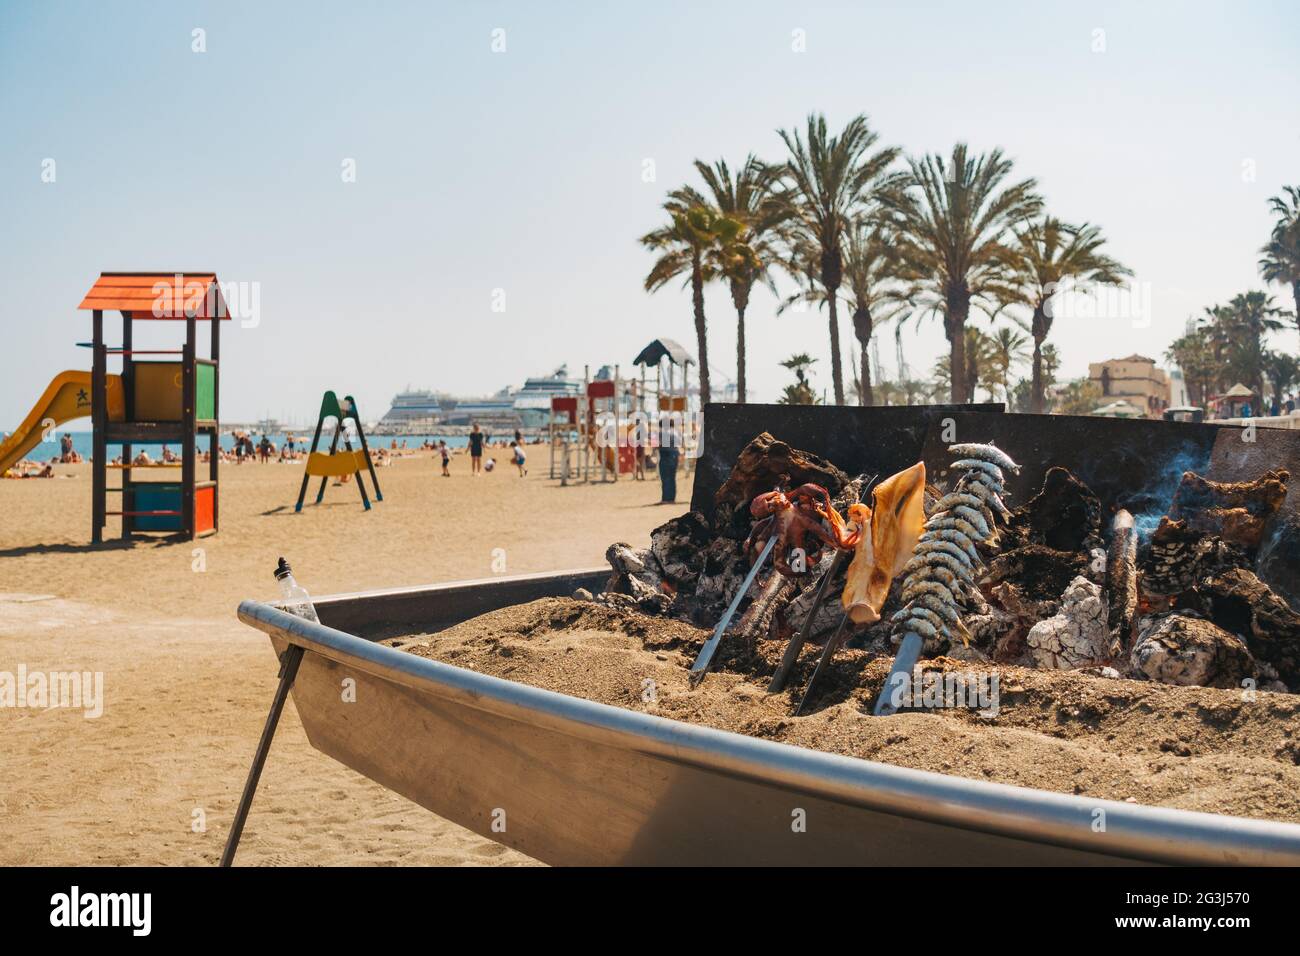 In einem Restaurant am Strand von Malagueta, Málaga, Spanien, werden bei einem behelfsmäßigen Holzfeuer-Barbecue verschiedene Meeresfrüchte gekocht Stockfoto